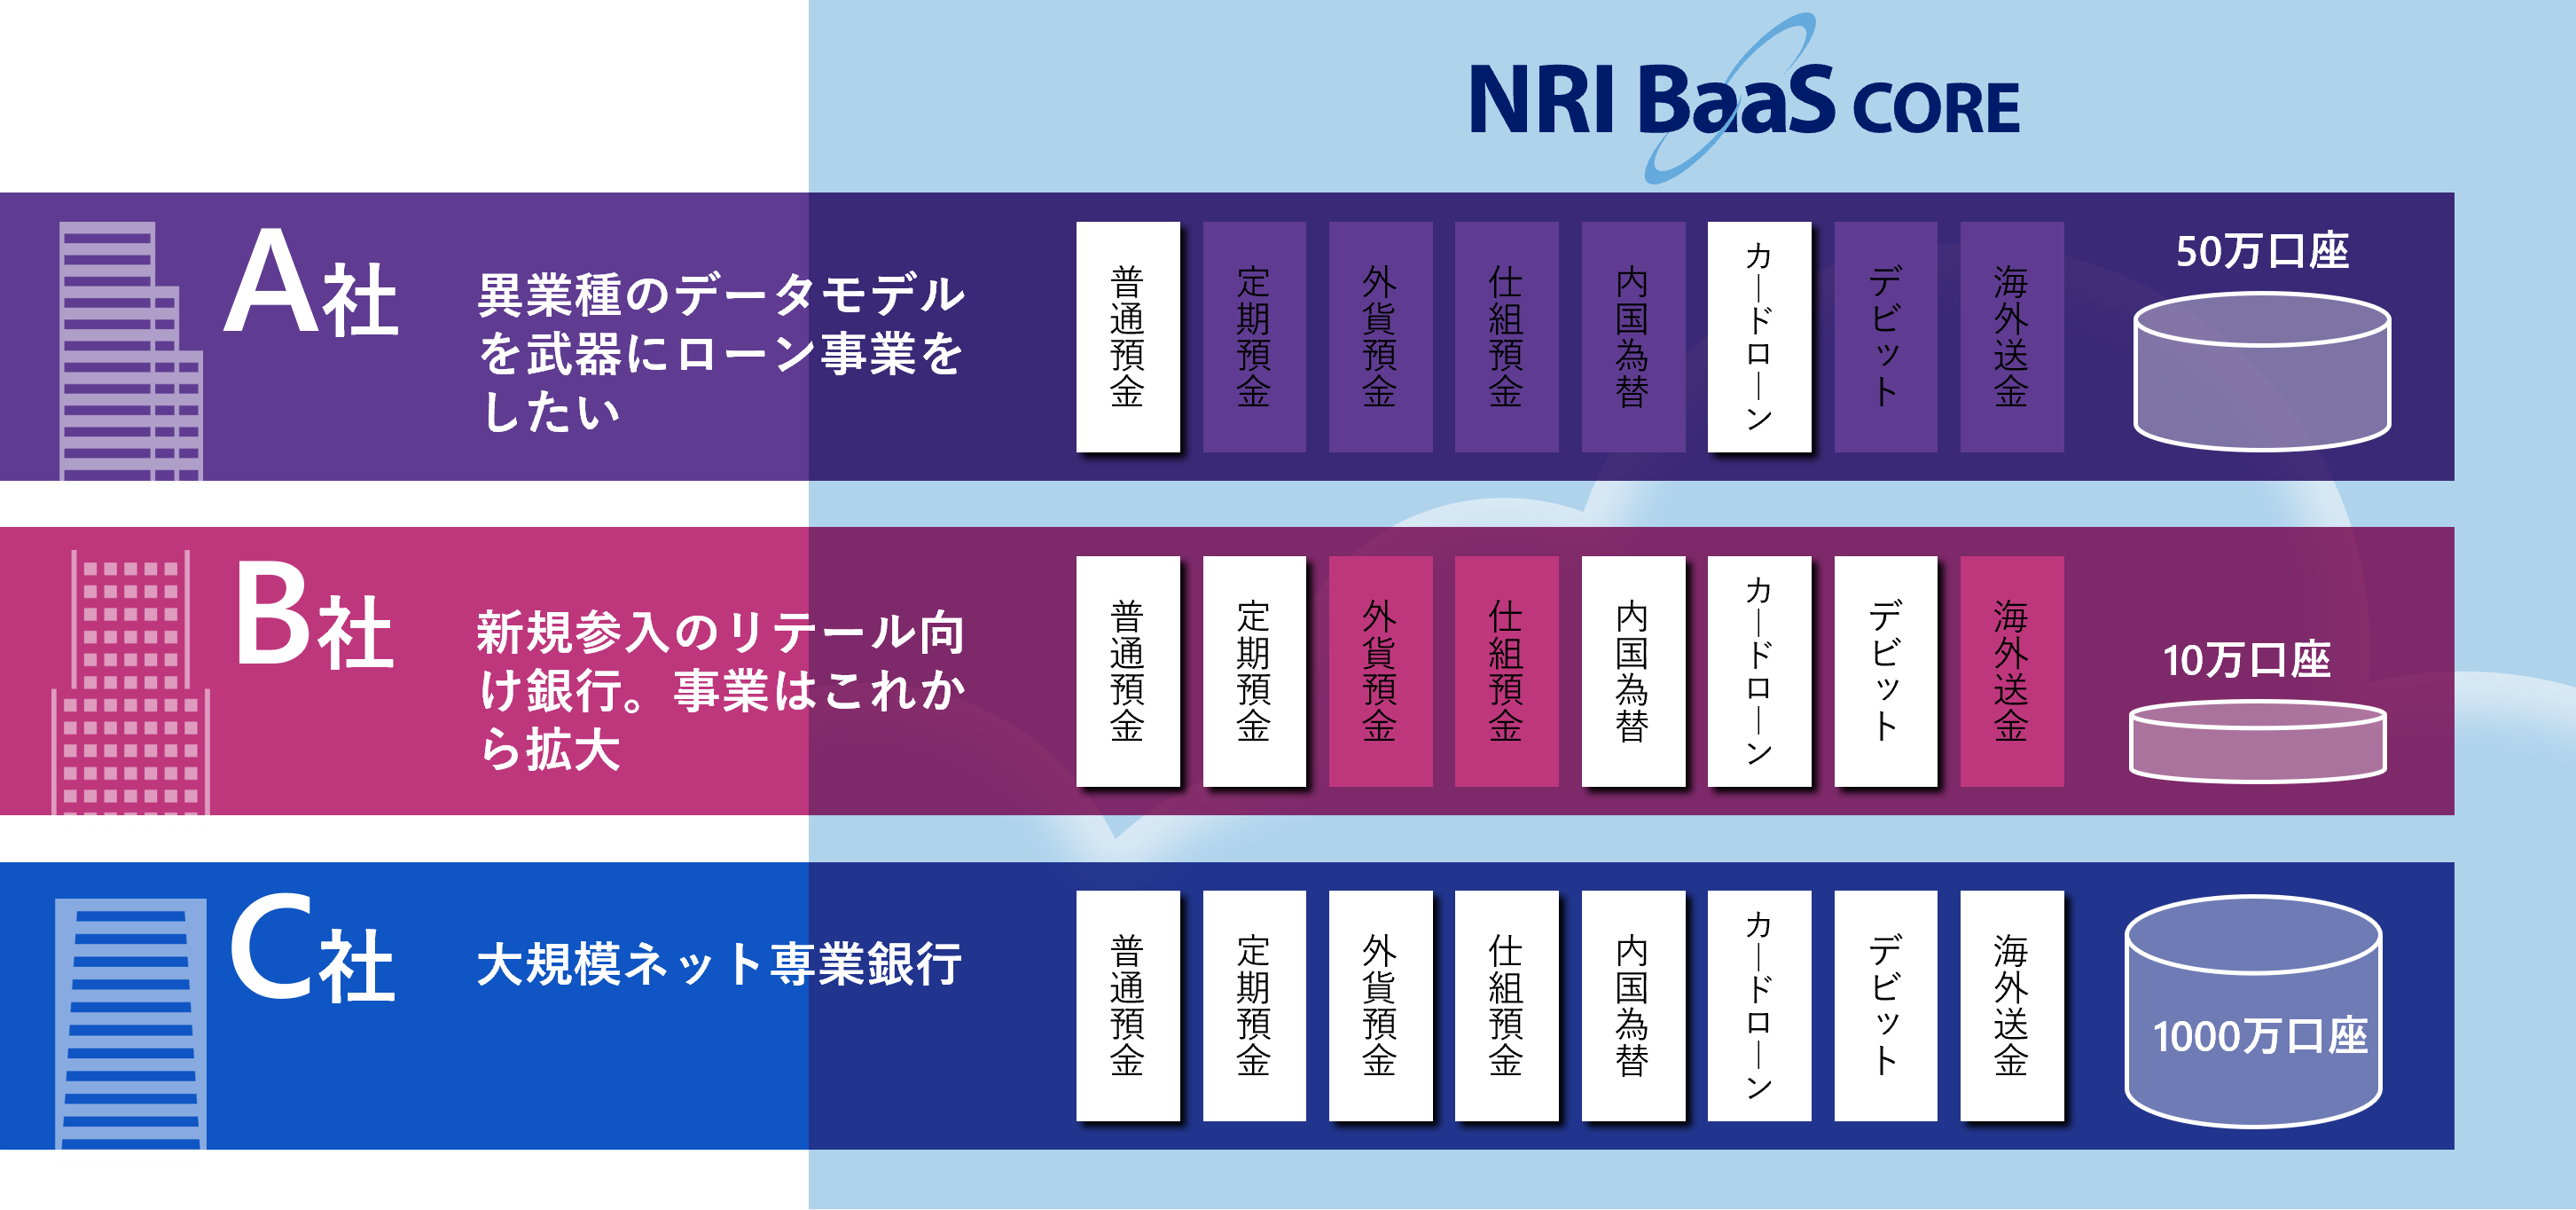 図2：NRI BaaS/CORE の導入イメージ